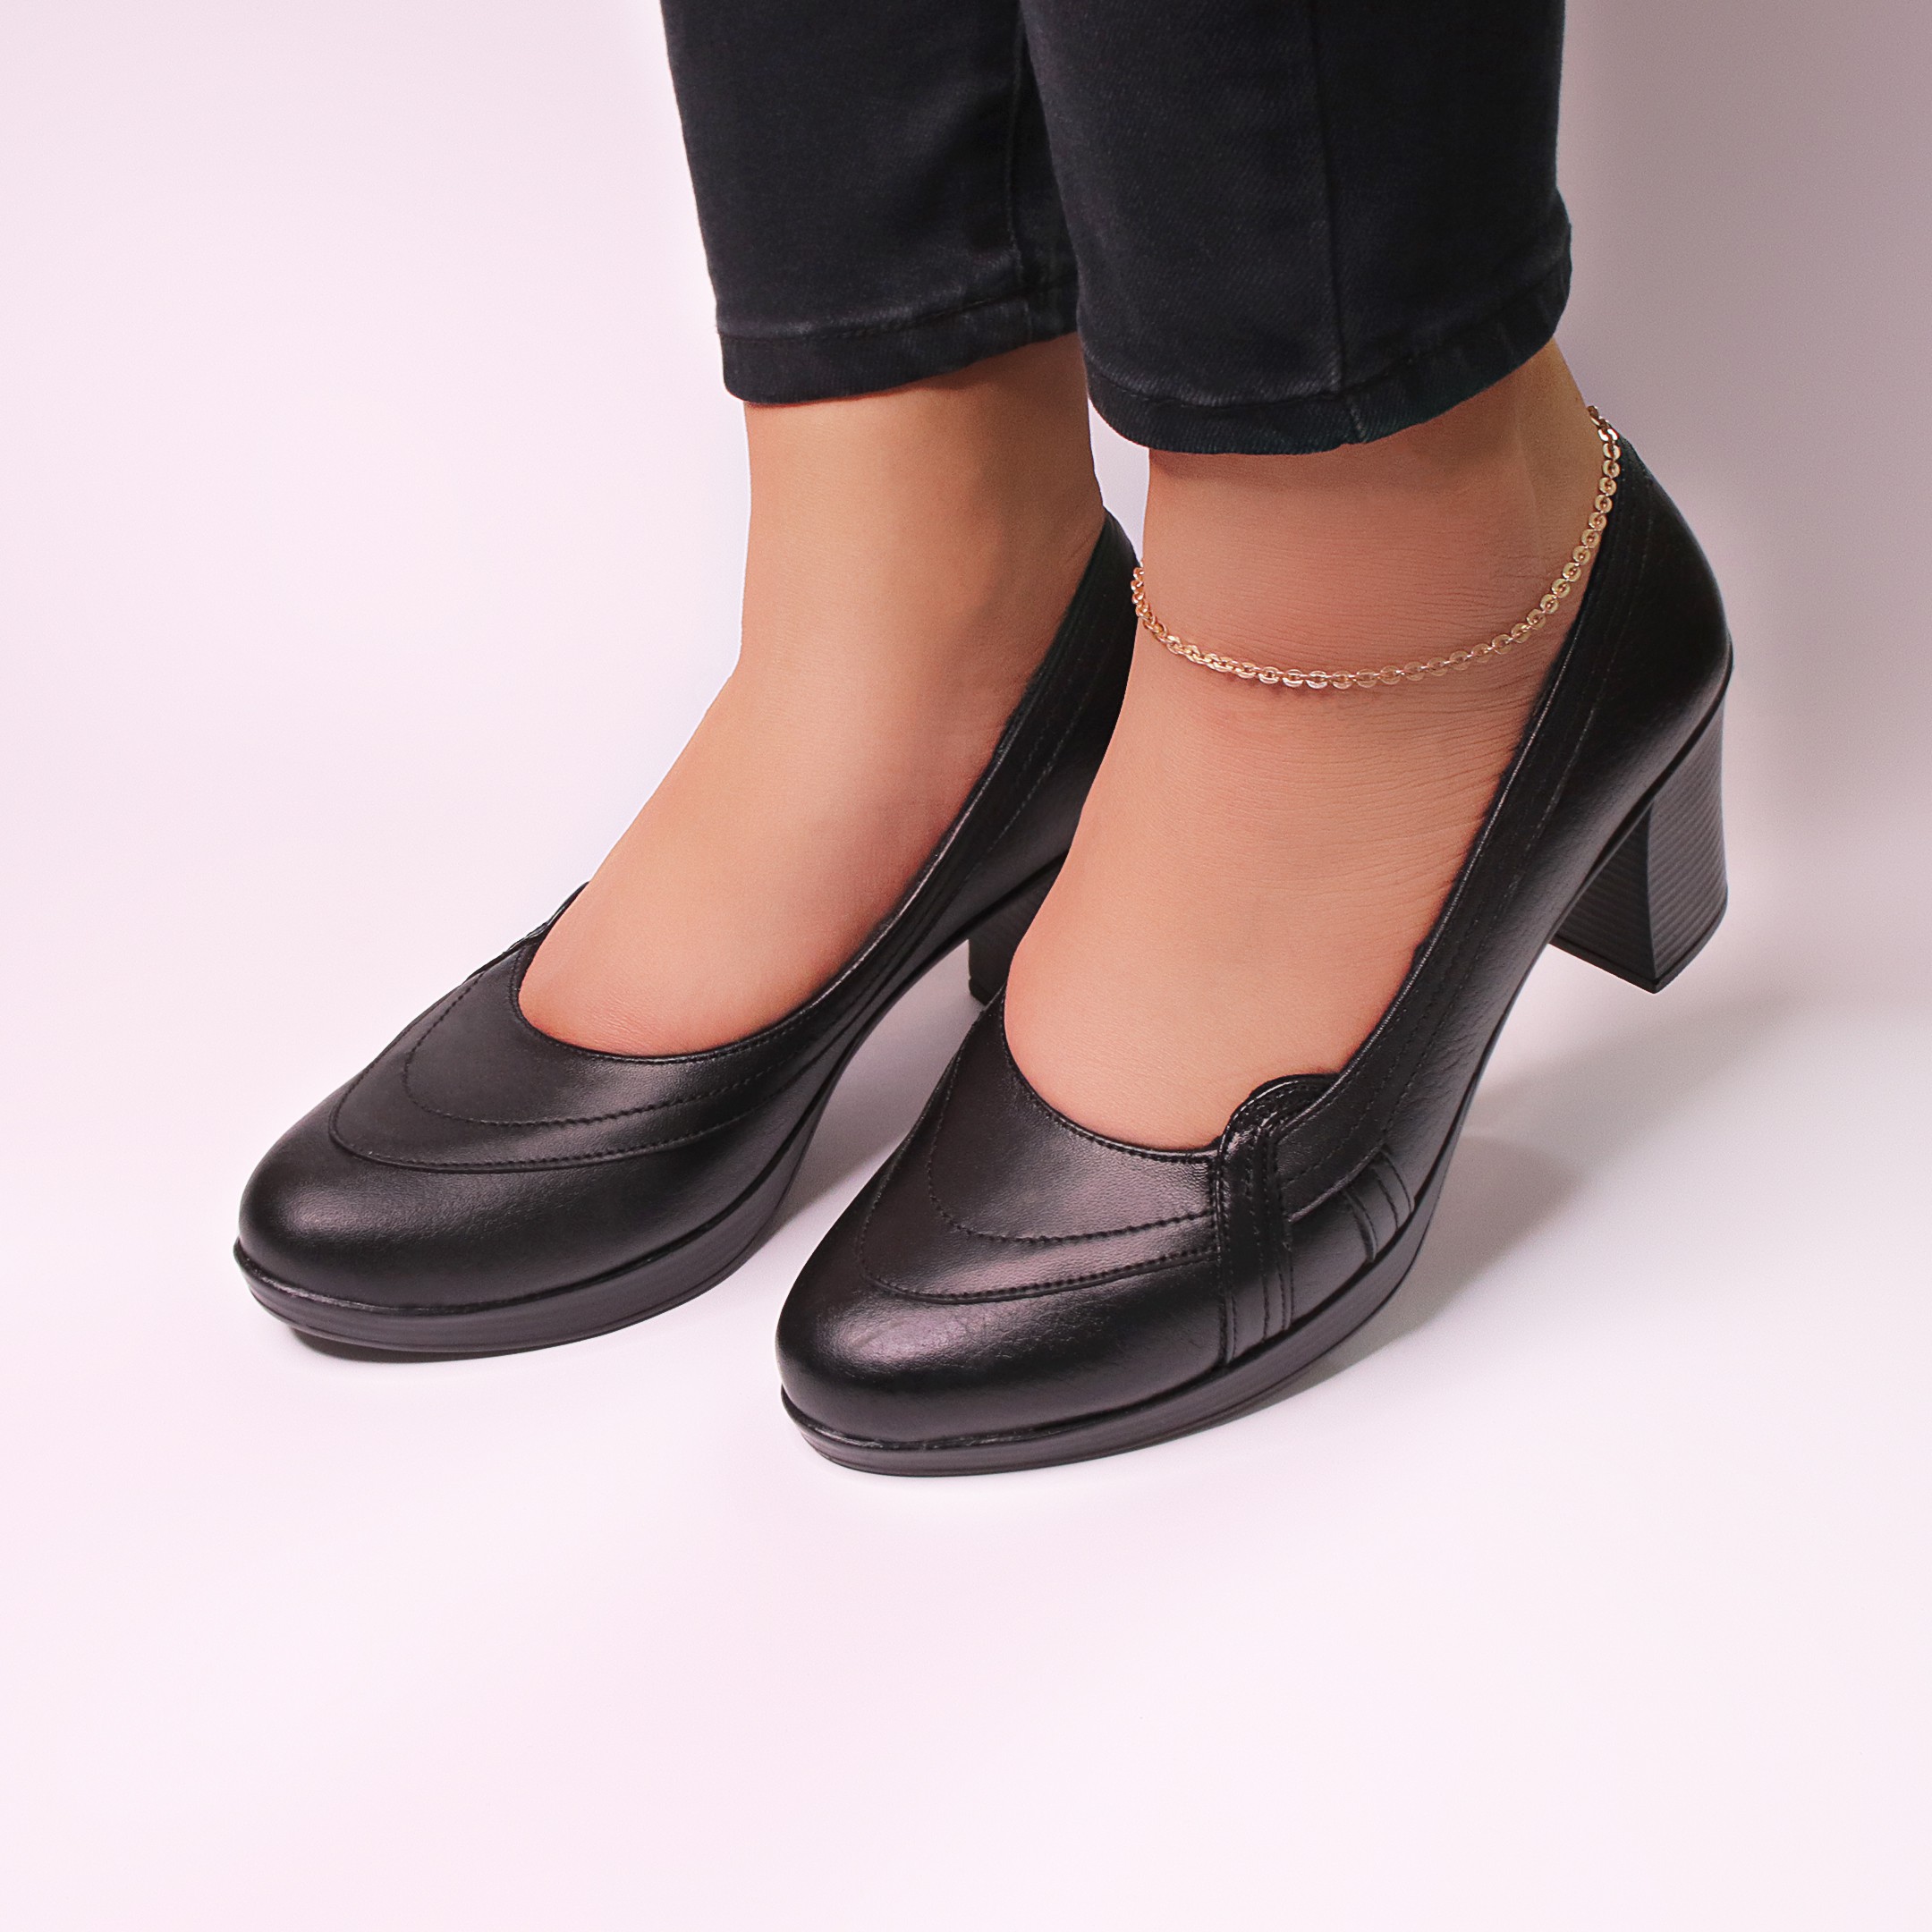 خرید آنلاین کفش چرمی پاشنه بلند زنانه روشن مدل 01-7060